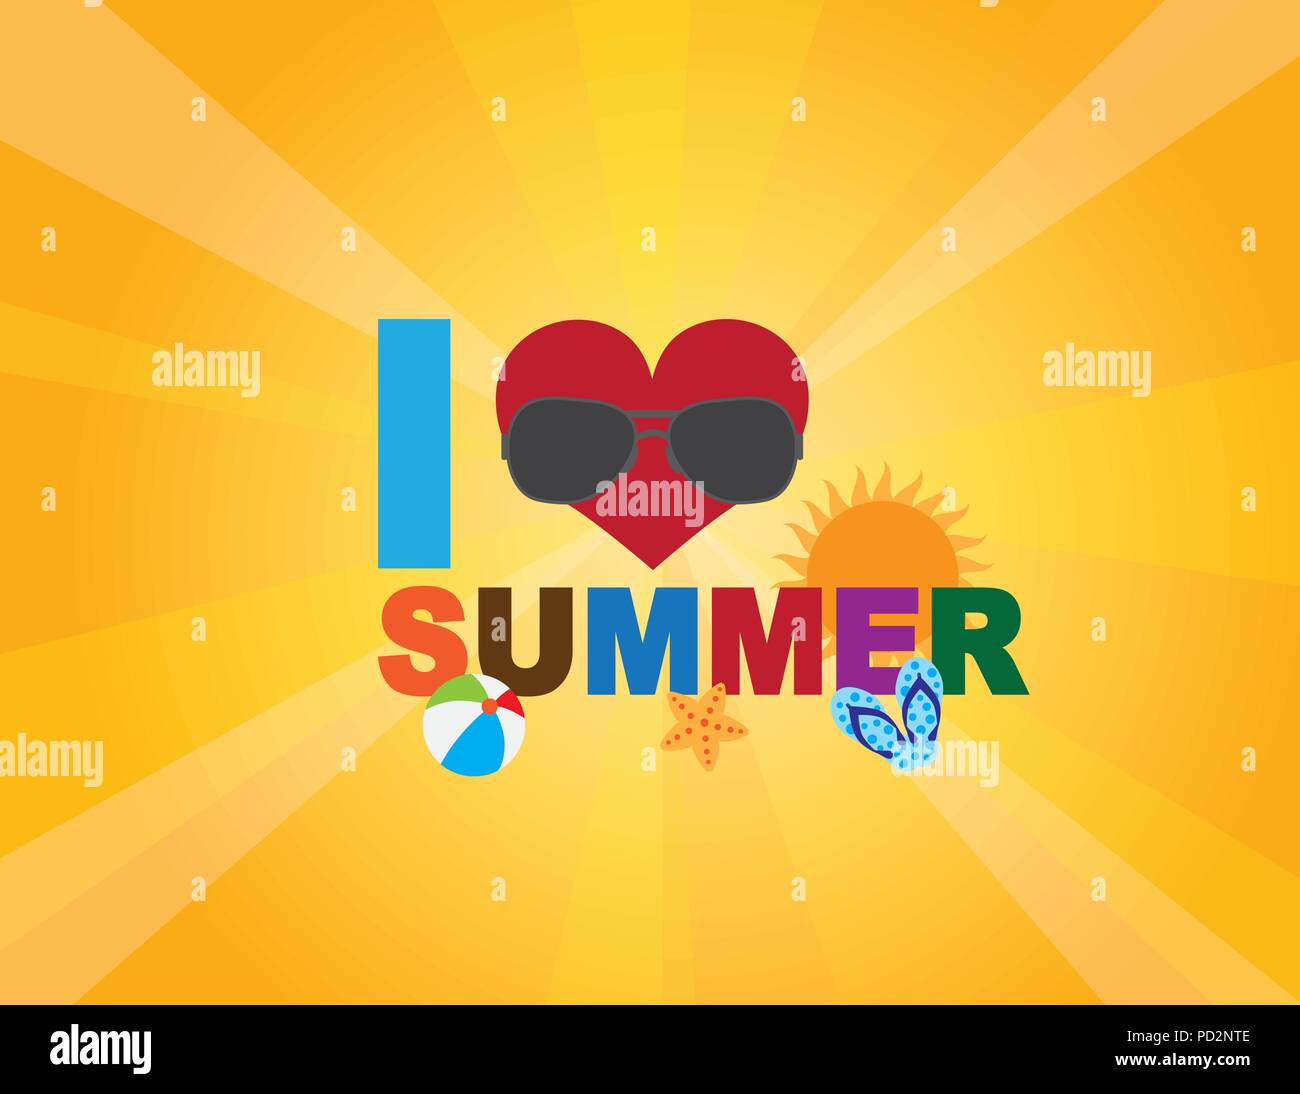 Me encanta el verano texto con corazón pelota de playa starfish flip flop Escena de playa en rayos de sol ilustración de fondo Ilustración del Vector